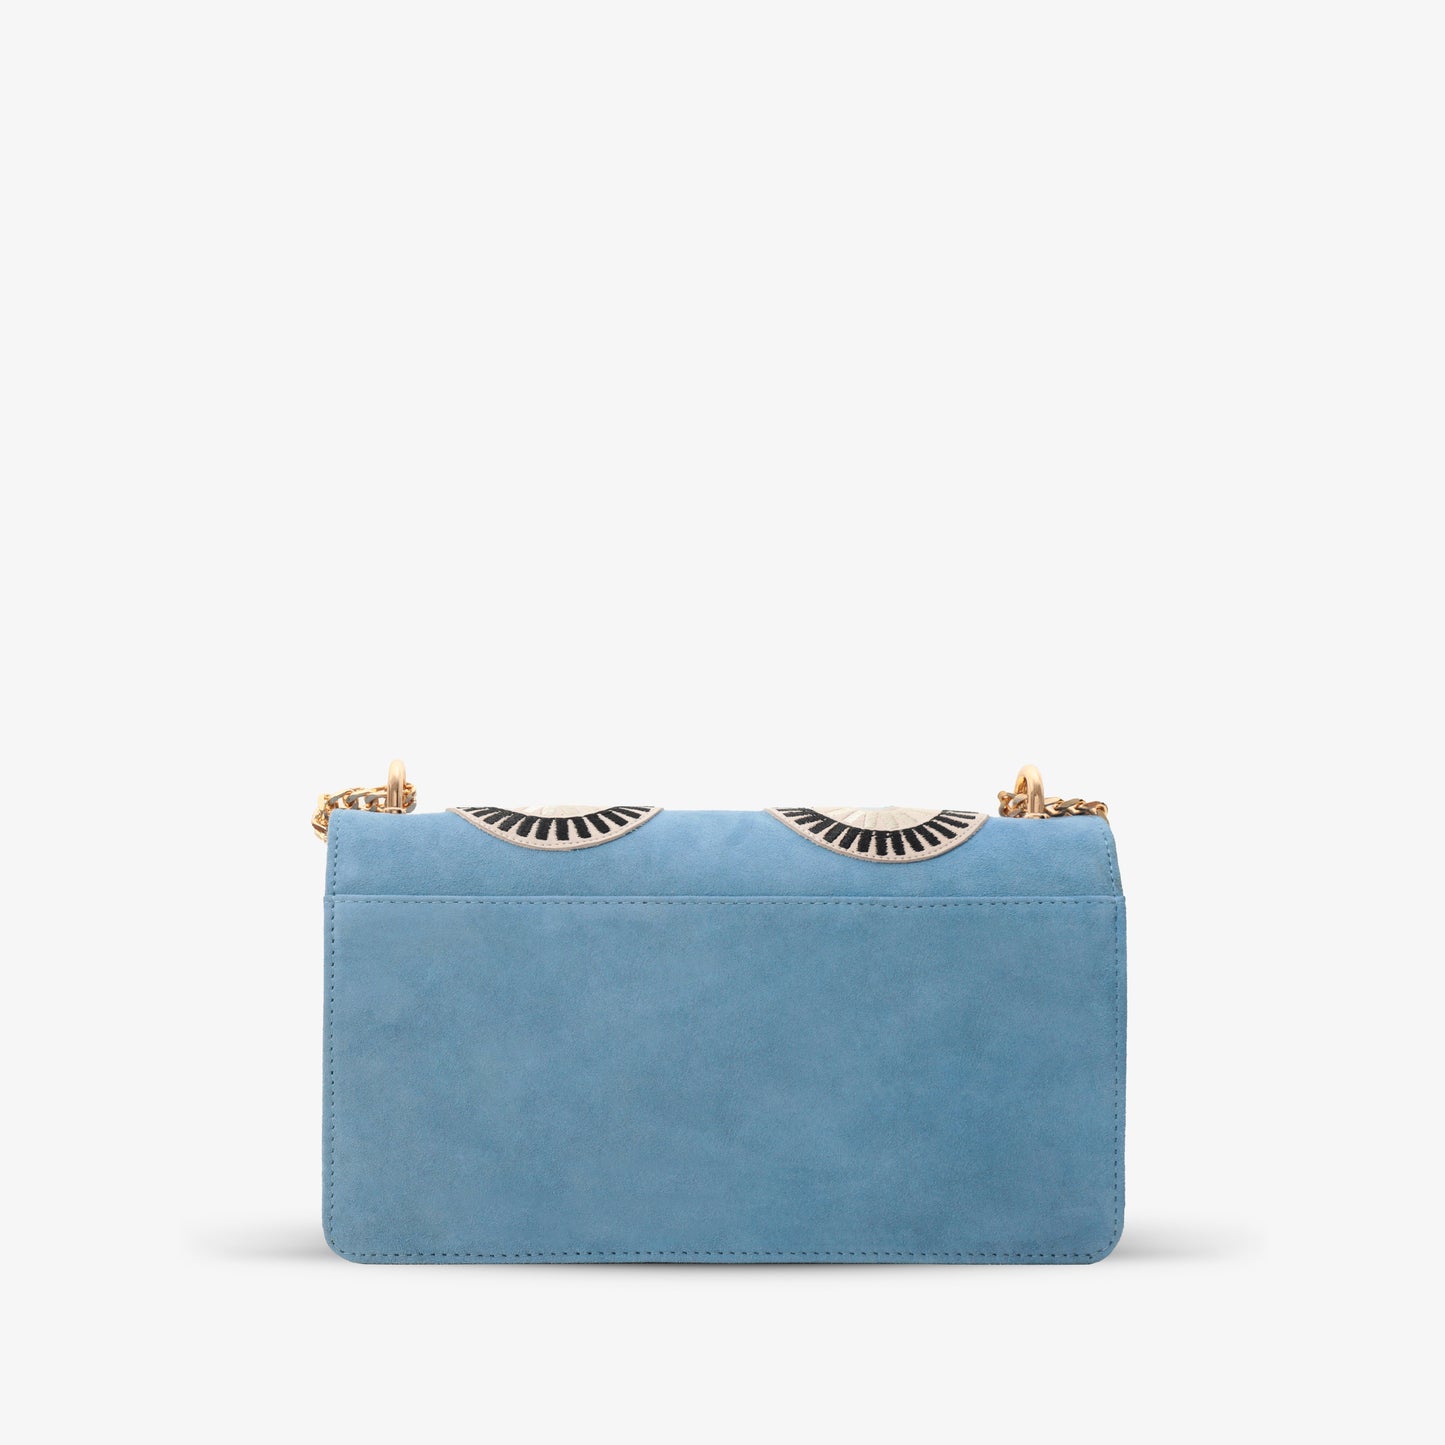 The Parama Blue Suede Leather Handbag